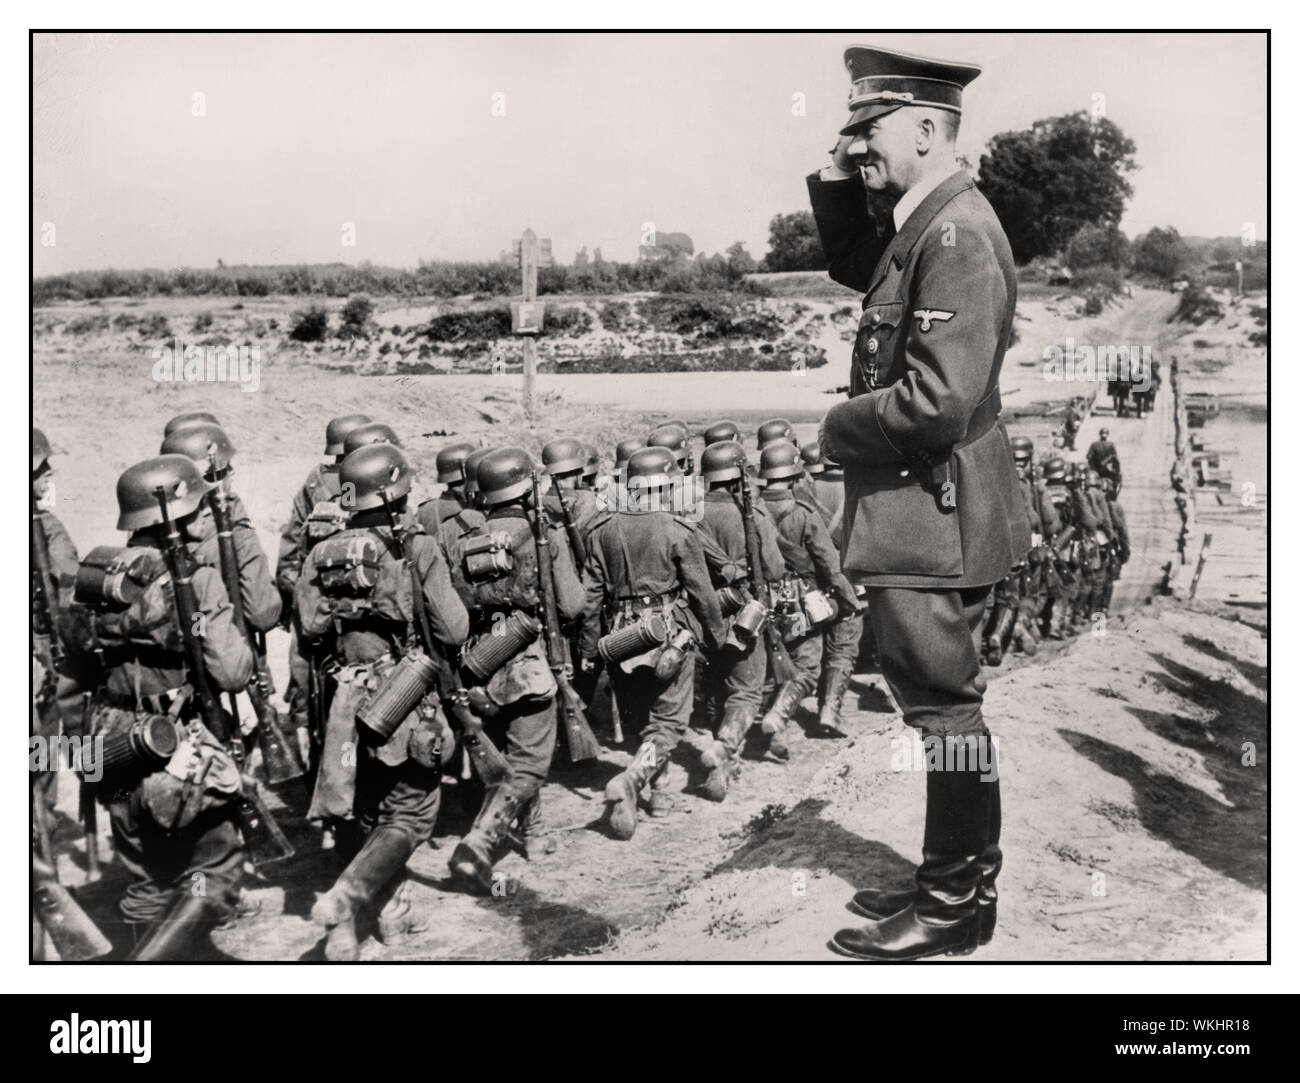 1939 ADOLF HITLER SALUTA OCCUPAZIONE TEDESCA DELL'INVASIONE POLONIA Adolf Hitler saluta avanzamento dell'invasione in marcia WW2 immagine dei soldati tedeschi Wehrmacht truppe durante l'occupazione della Polonia WW2 Foto Stock